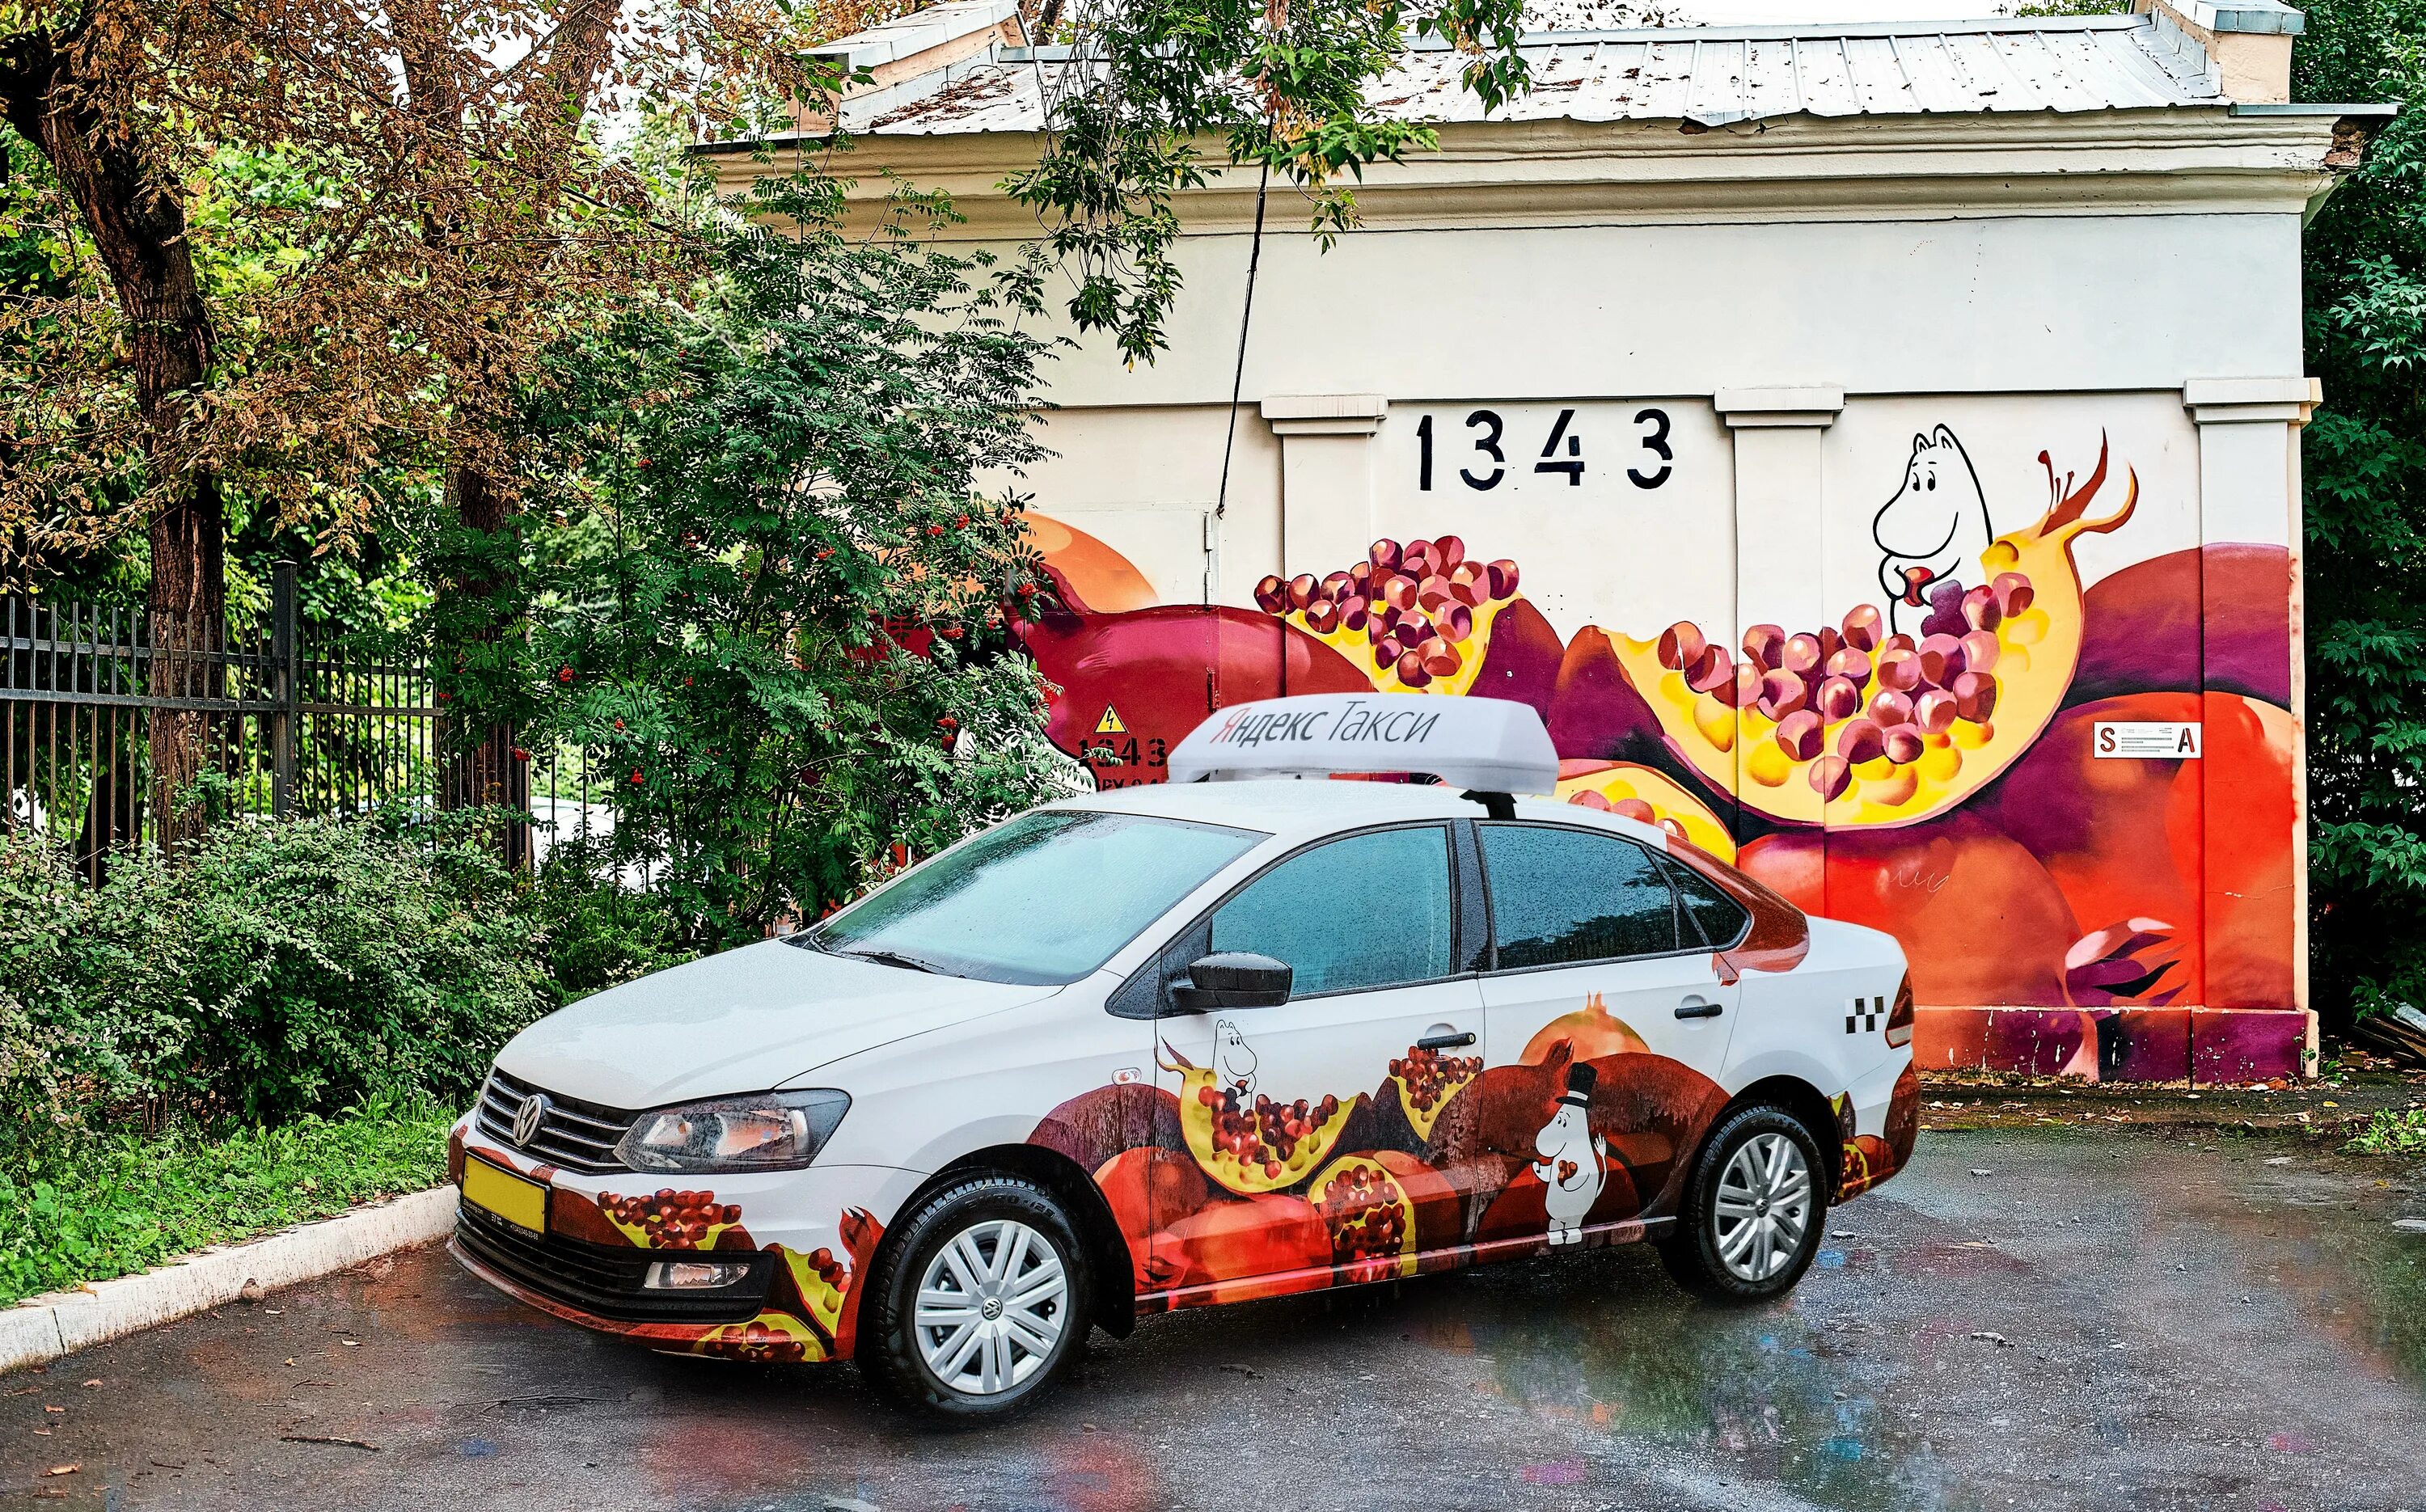 Такси автомобиль екатеринбург. Стрит арт авто. Граффити такси. Уличное искусство арт автомобили.